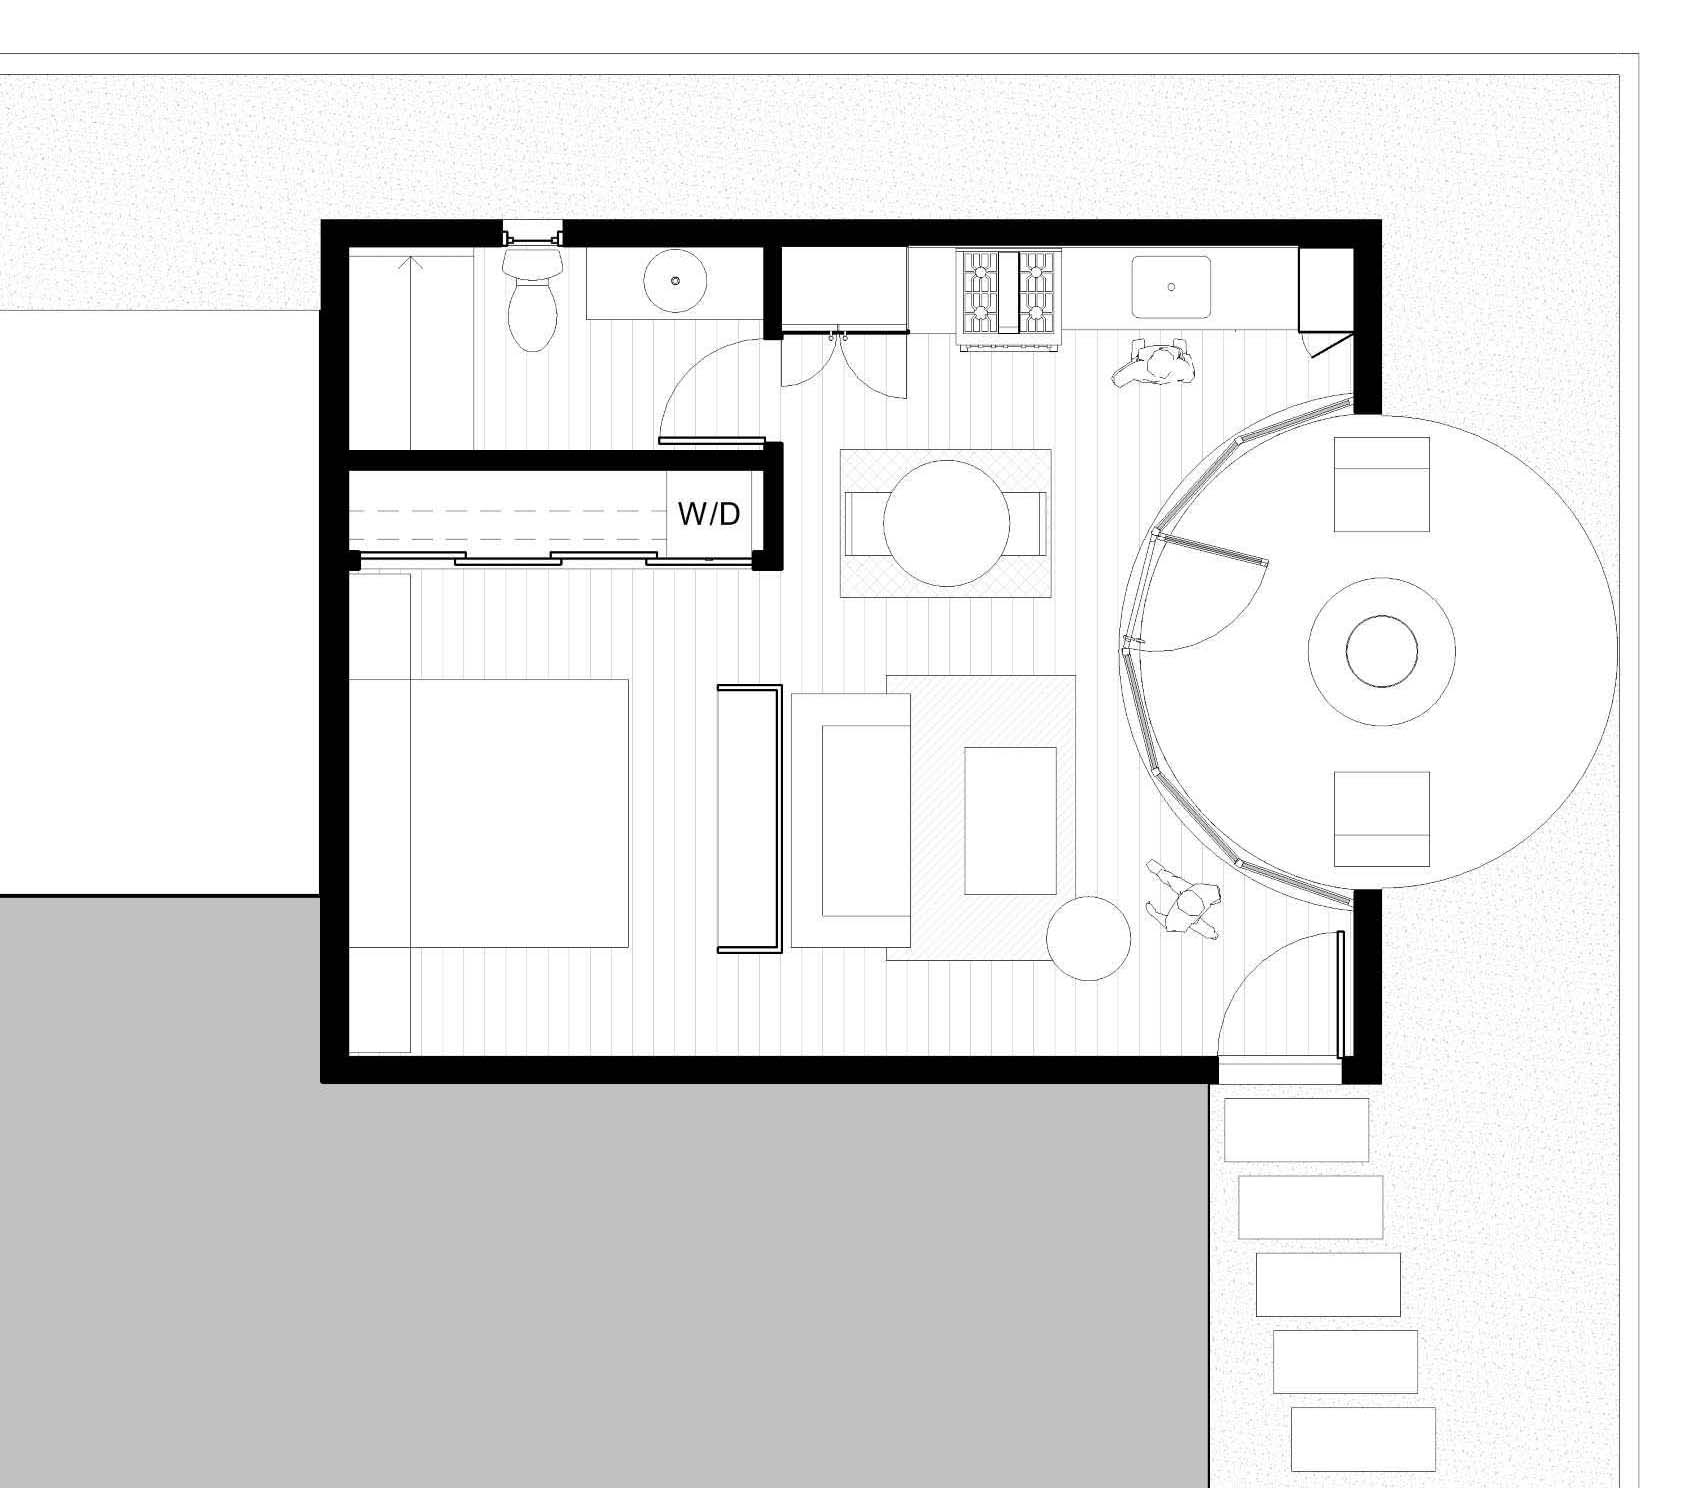 The floor plan of a modern ADU (accessory dwelling unit).